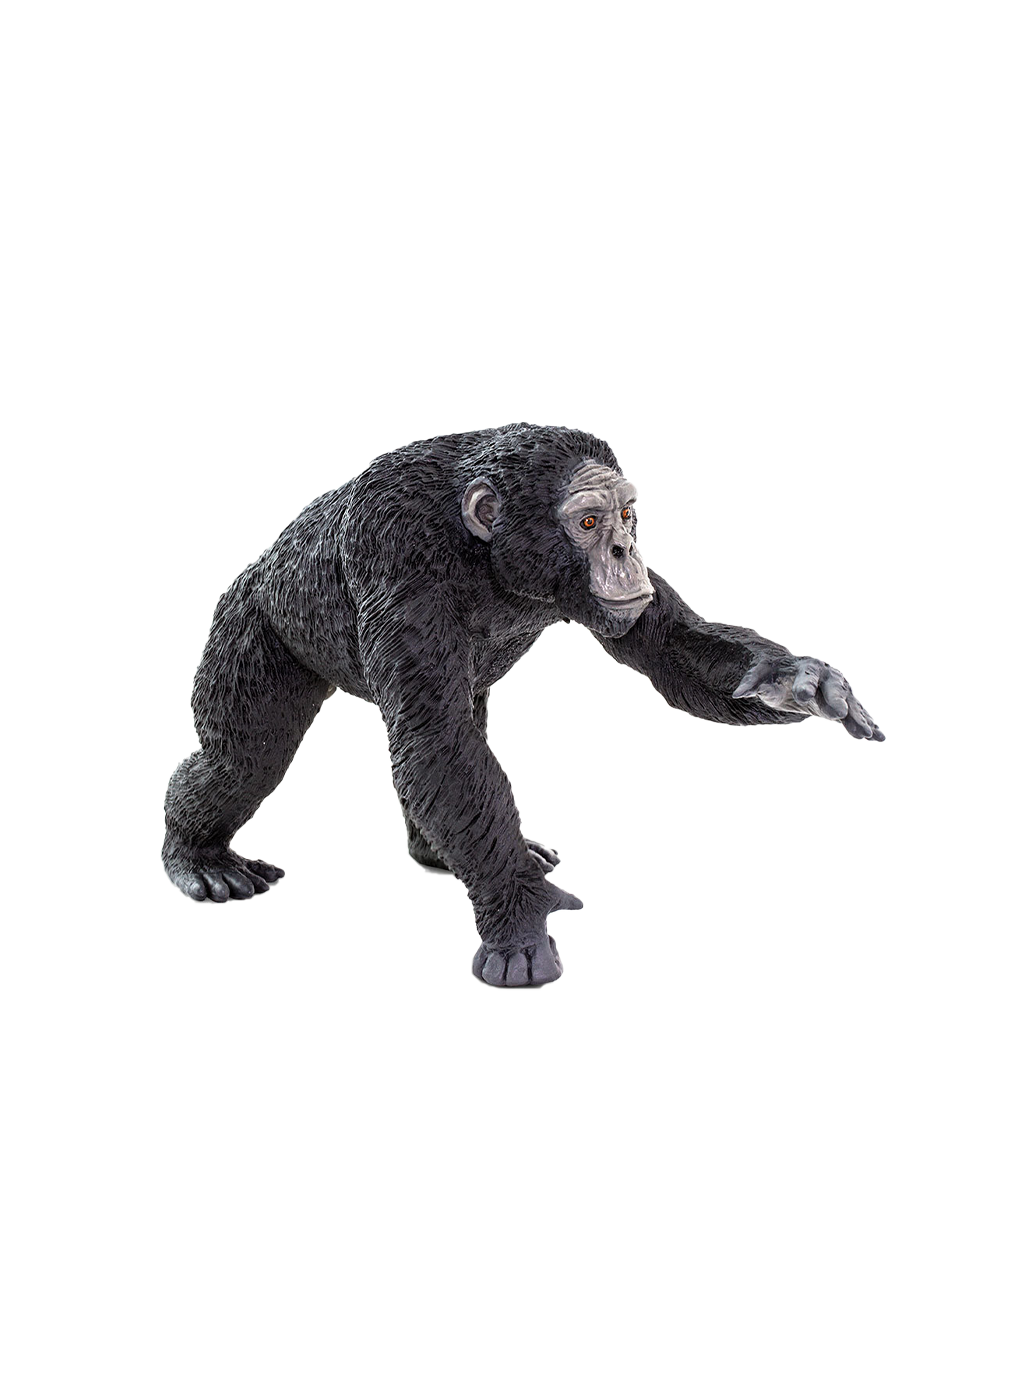 Große Schimpansenfigur